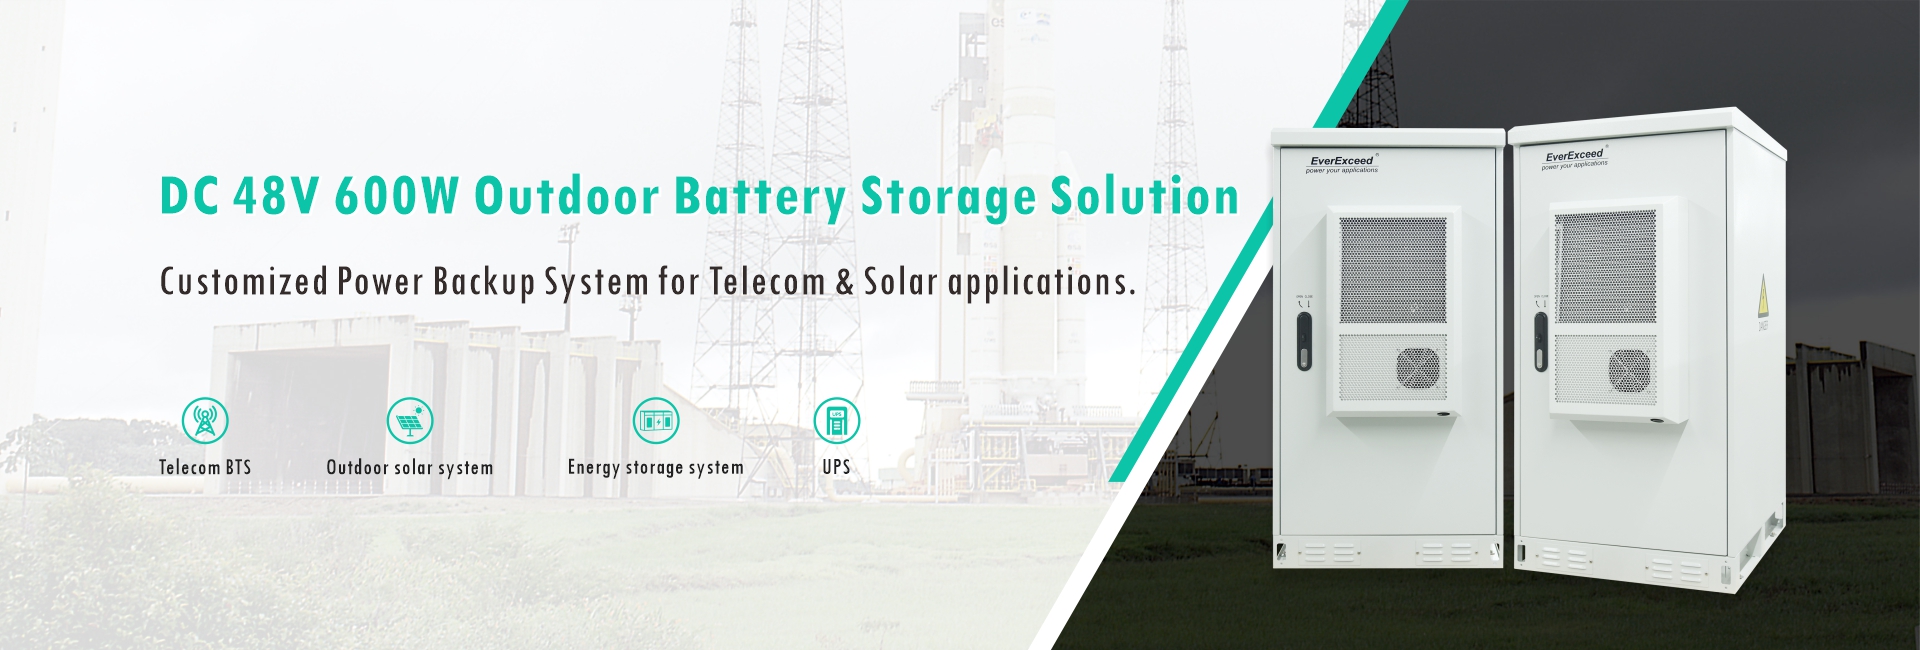 DC 48V 600W Outdoor Battery Storage Solution For Telecom